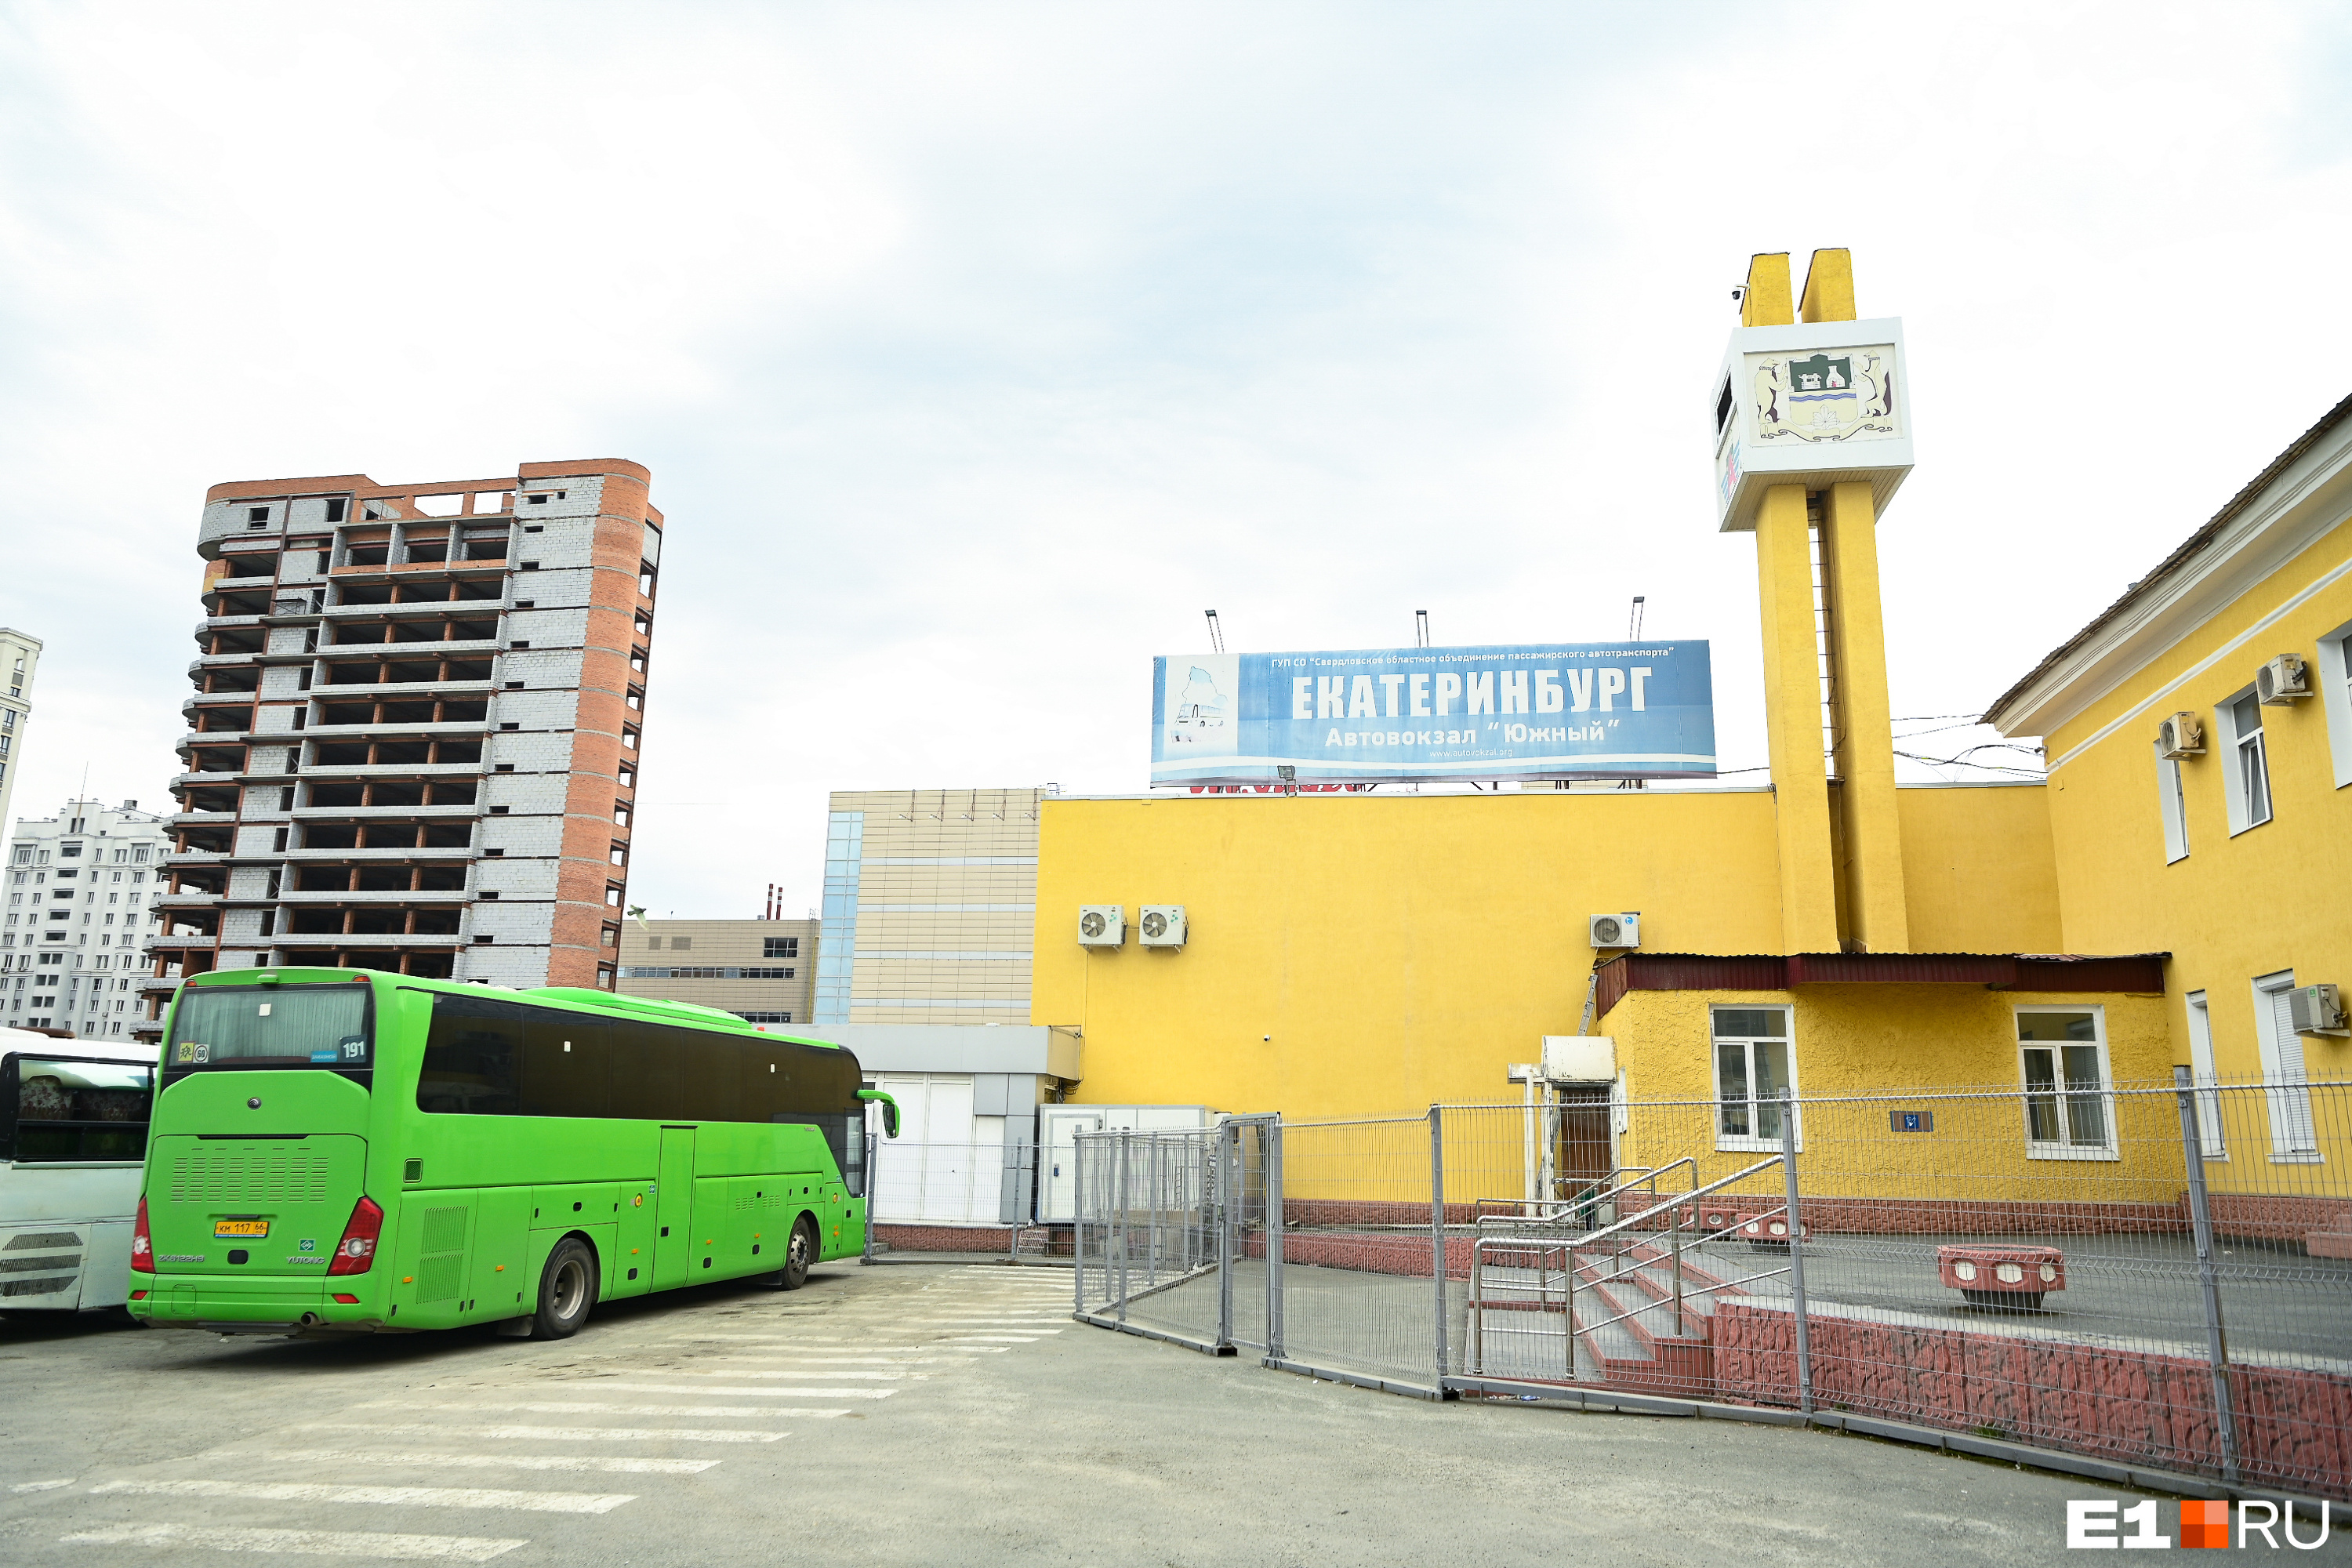 «Жизнь и безопасность прежде всего». Автобусные туры в Крым из Екатеринбурга отменили